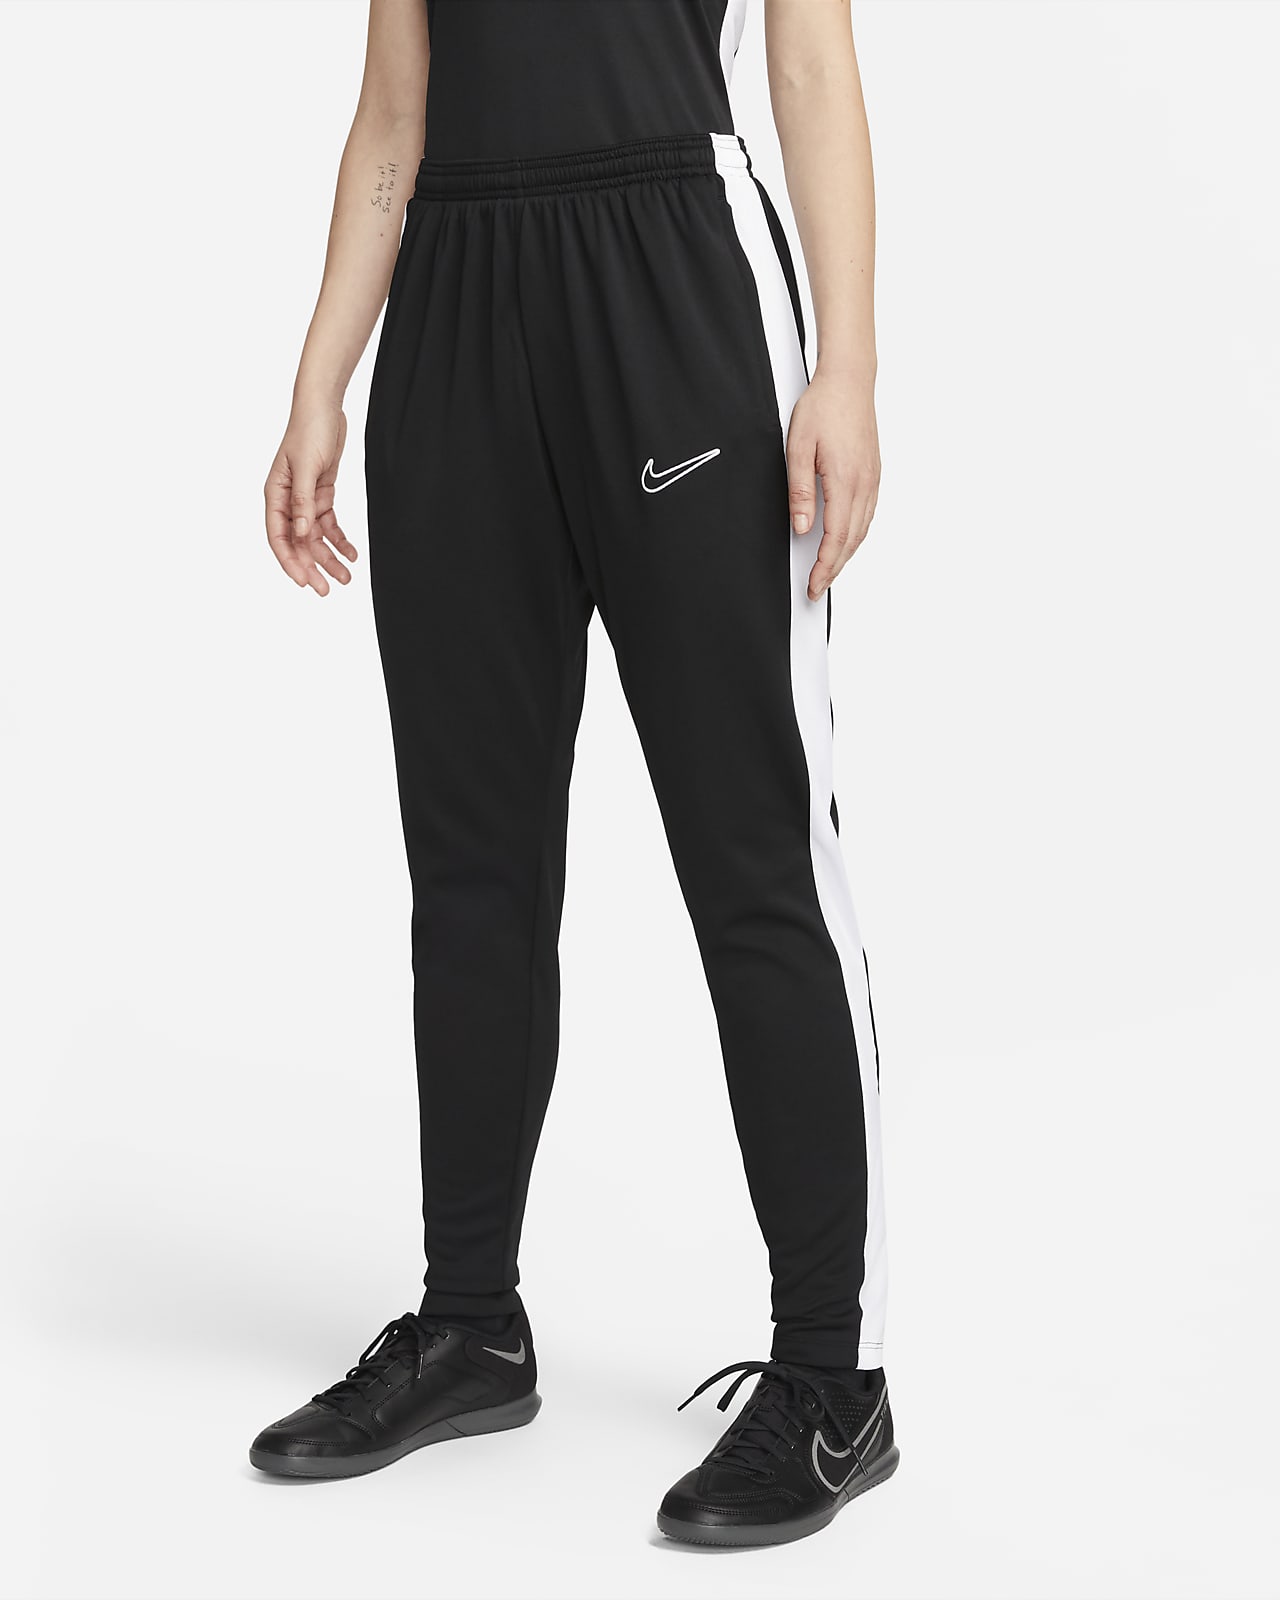 Predicar gastos generales historia Nike Dri-FIT Academy Pantalón de fútbol - Mujer. Nike ES